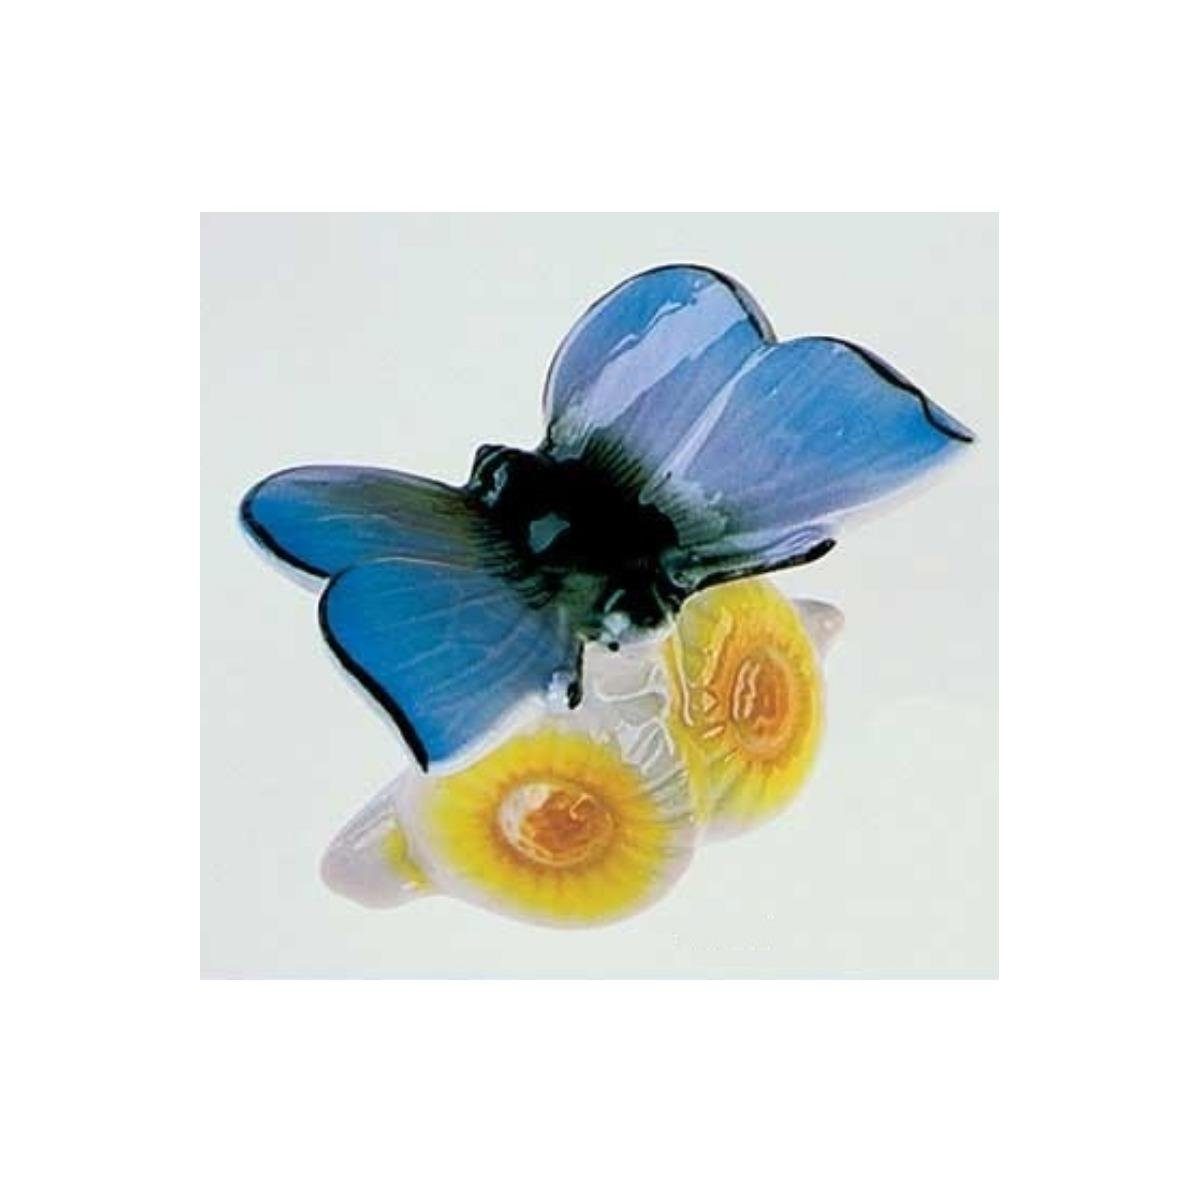 Wagner & Apel Porzellan Dekofigur 00584/40 - Schmetterling (Bläuling)